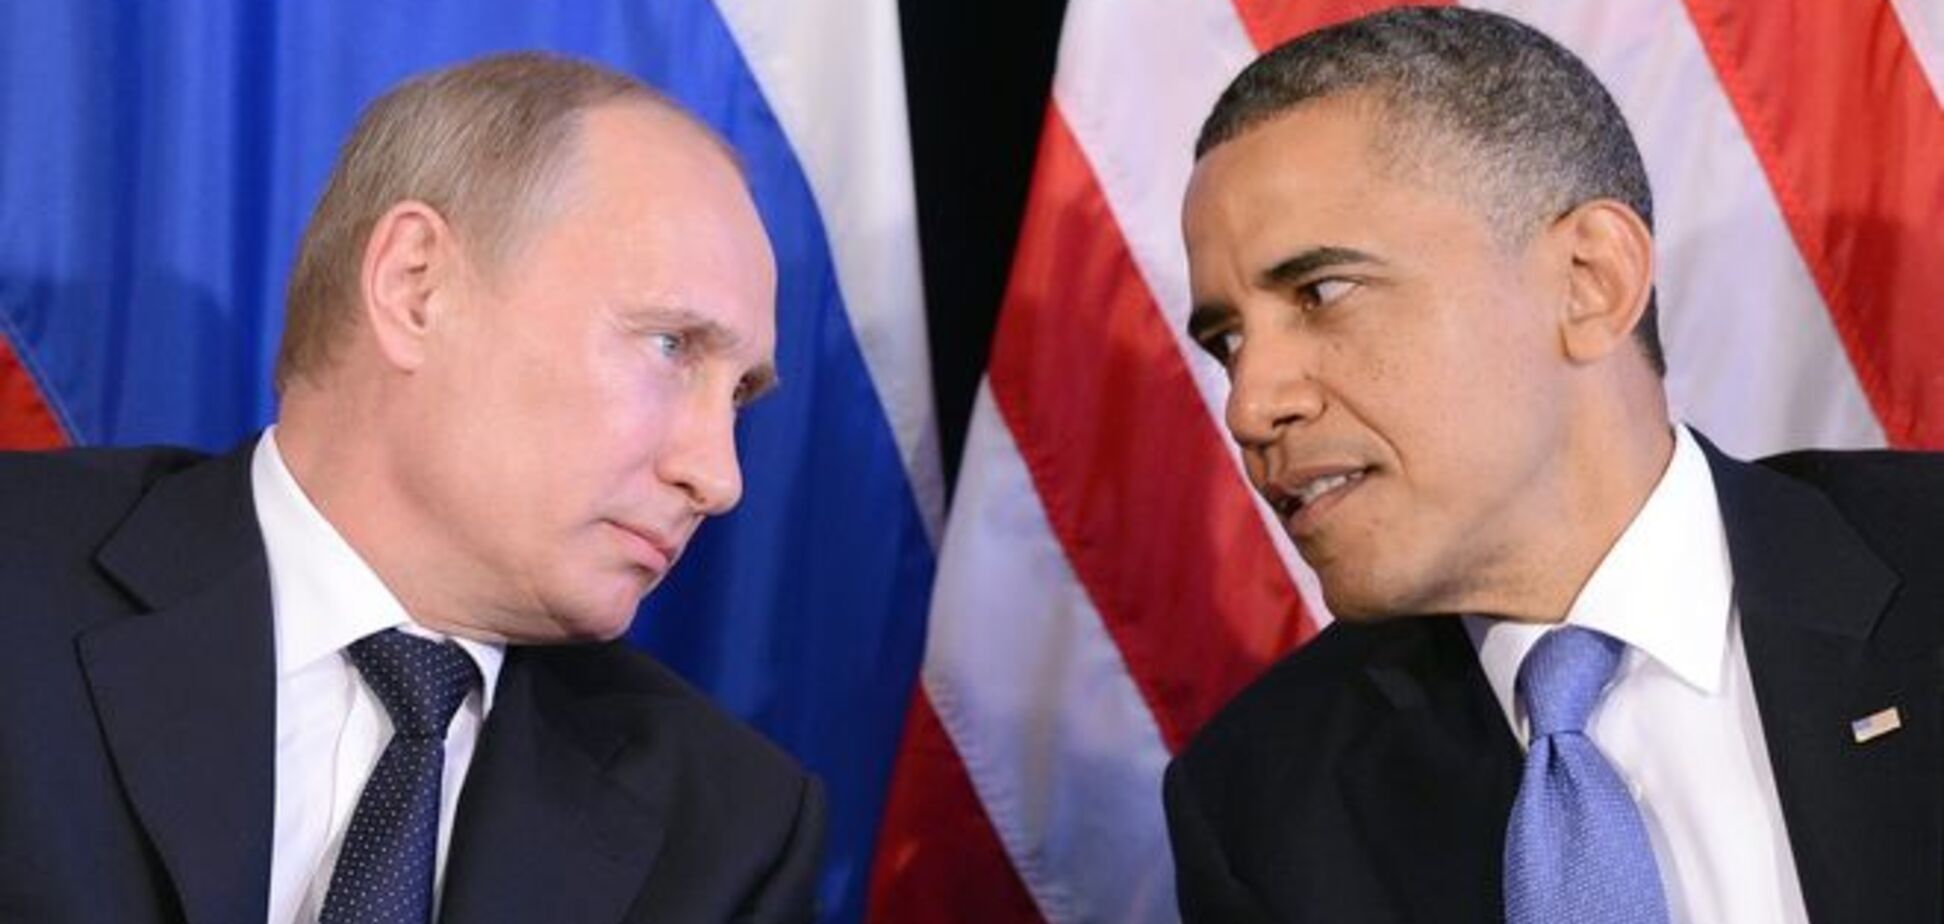 Личные данные Обамы и Путина были случайно разглашены перед саммитом G20 